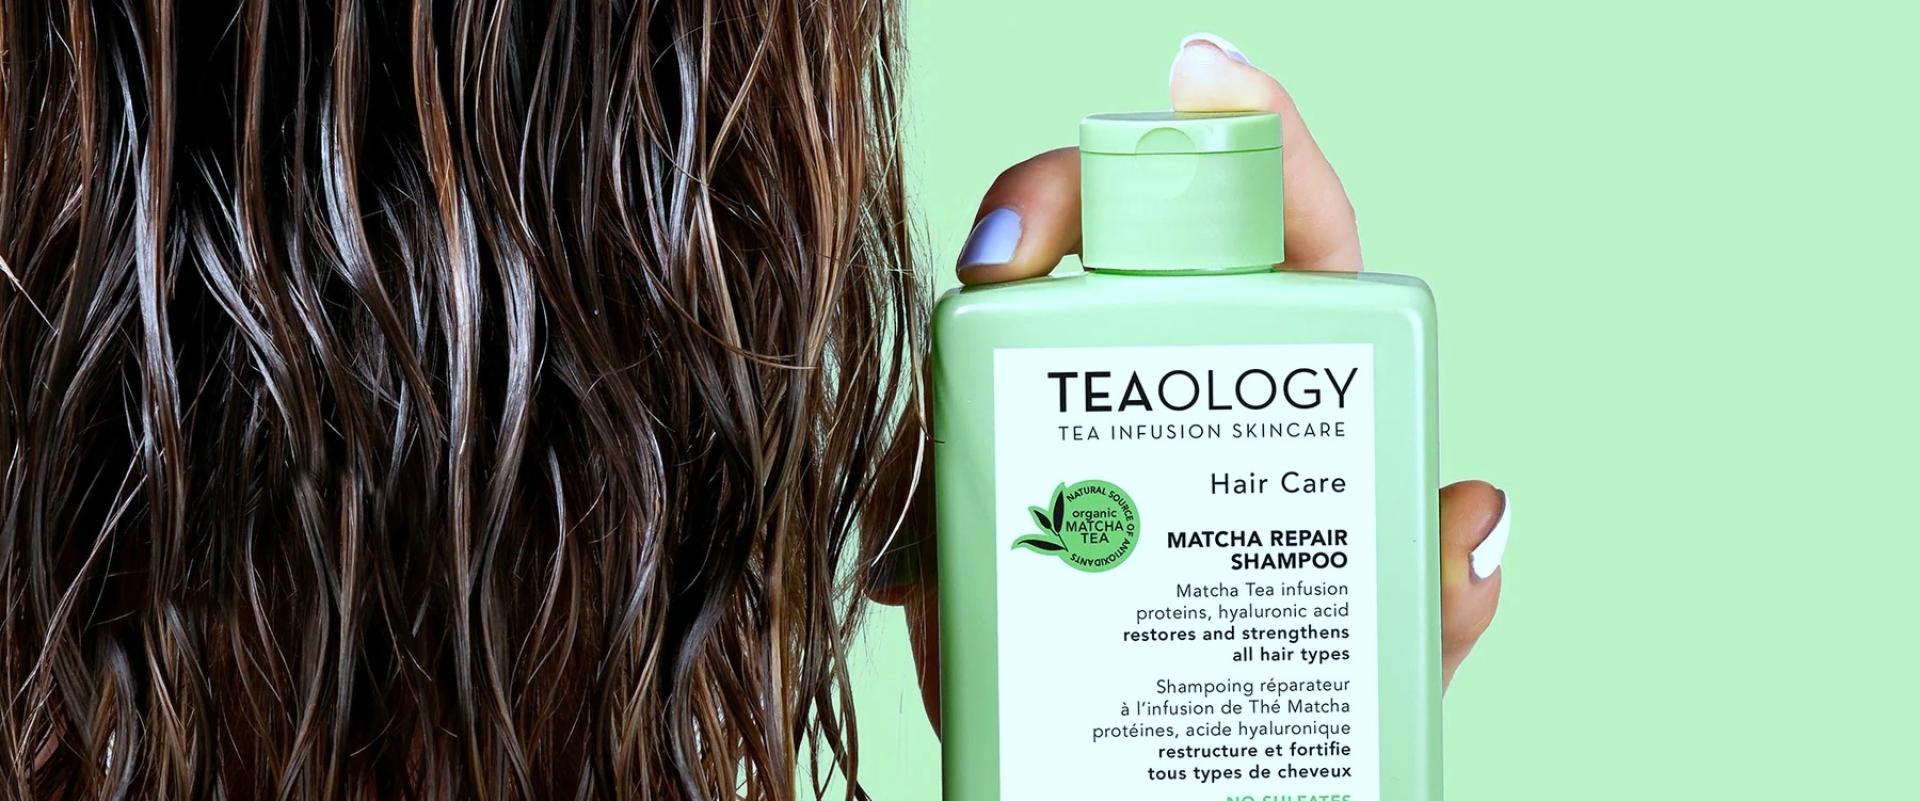 Teology: matcha dobra dla włosów i skóry głowy